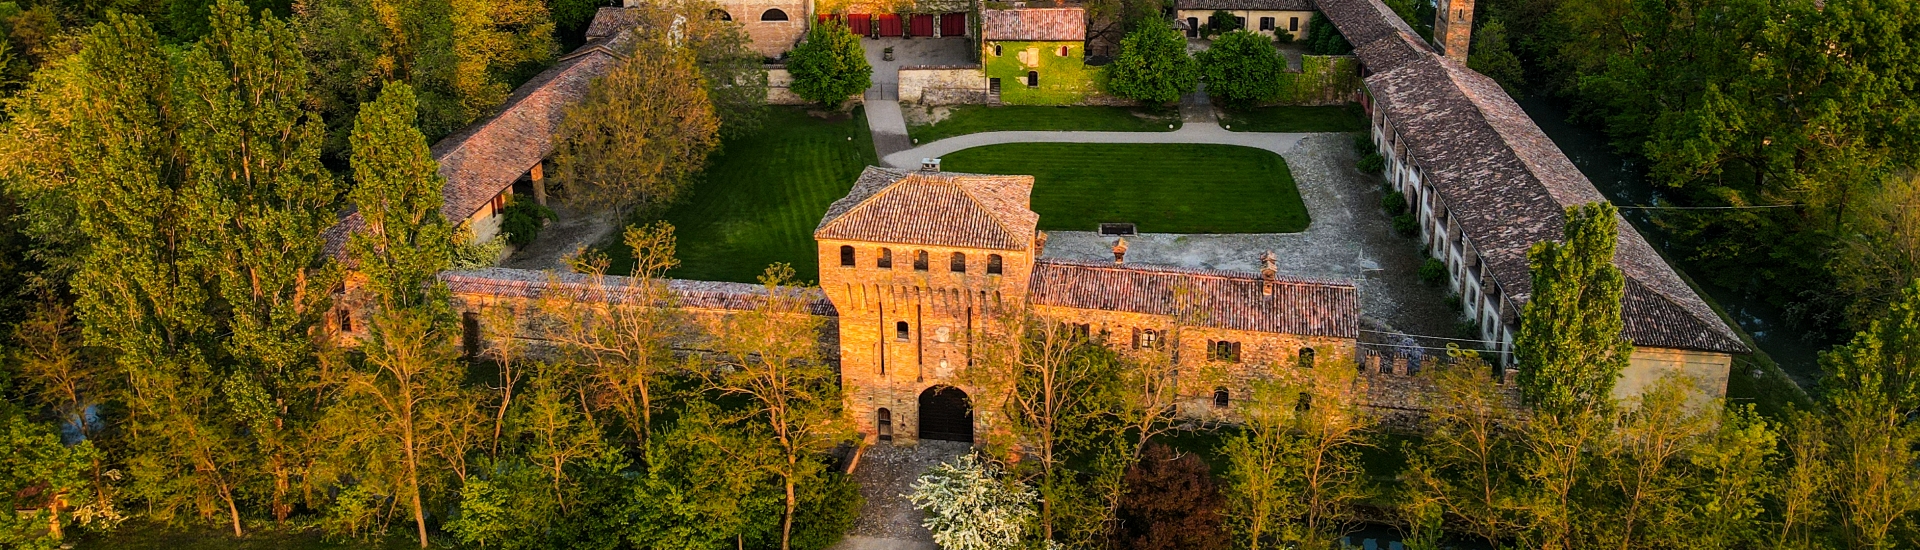 Castello di Paderna - Veduta dal drone foto di: |Guido Citterio| - Archivio del castello